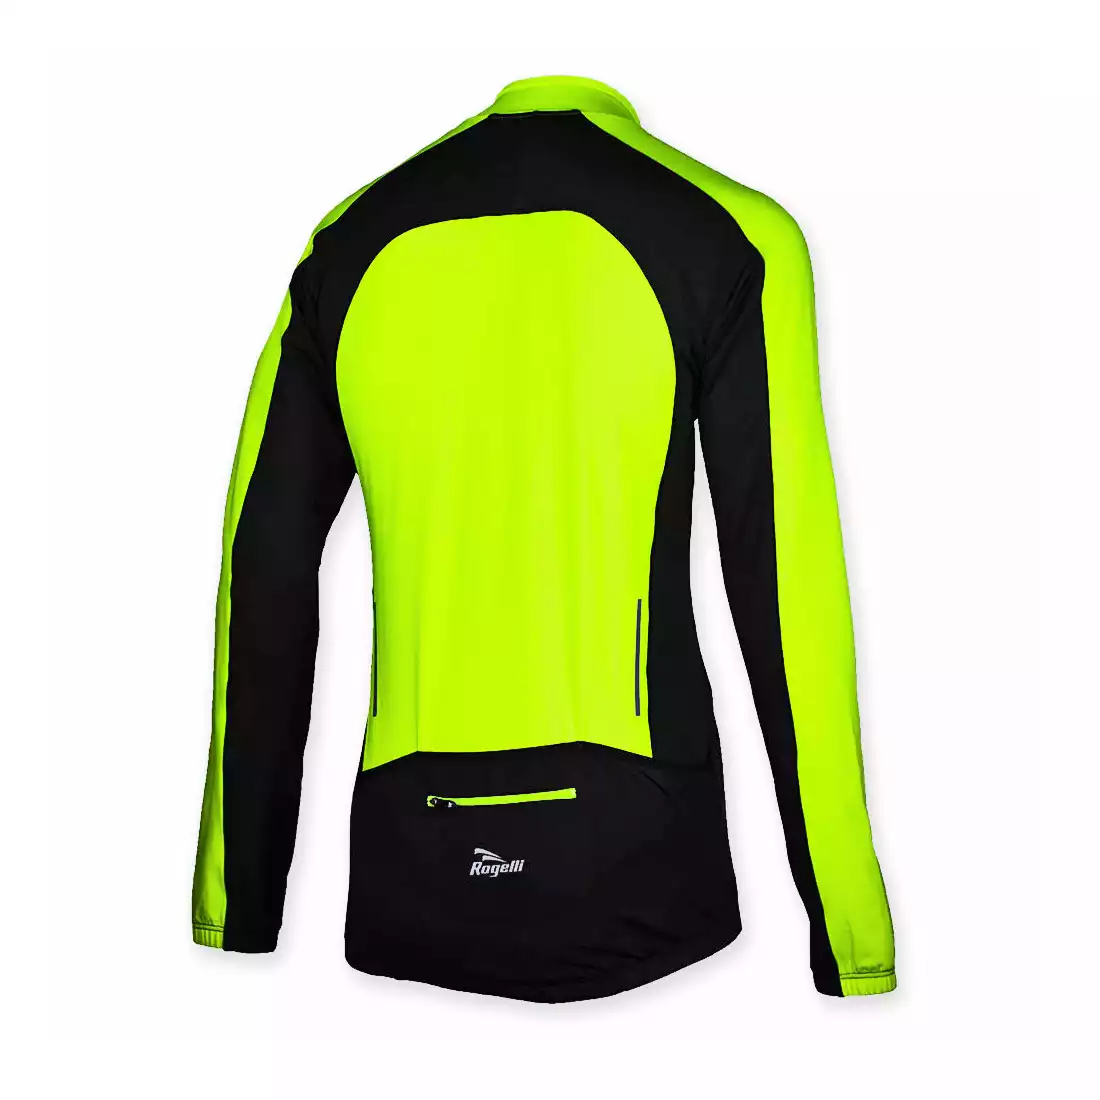 ROGELLI TREVISO - ciepła bluza rowerowa - 001.801, kolor: Fluor